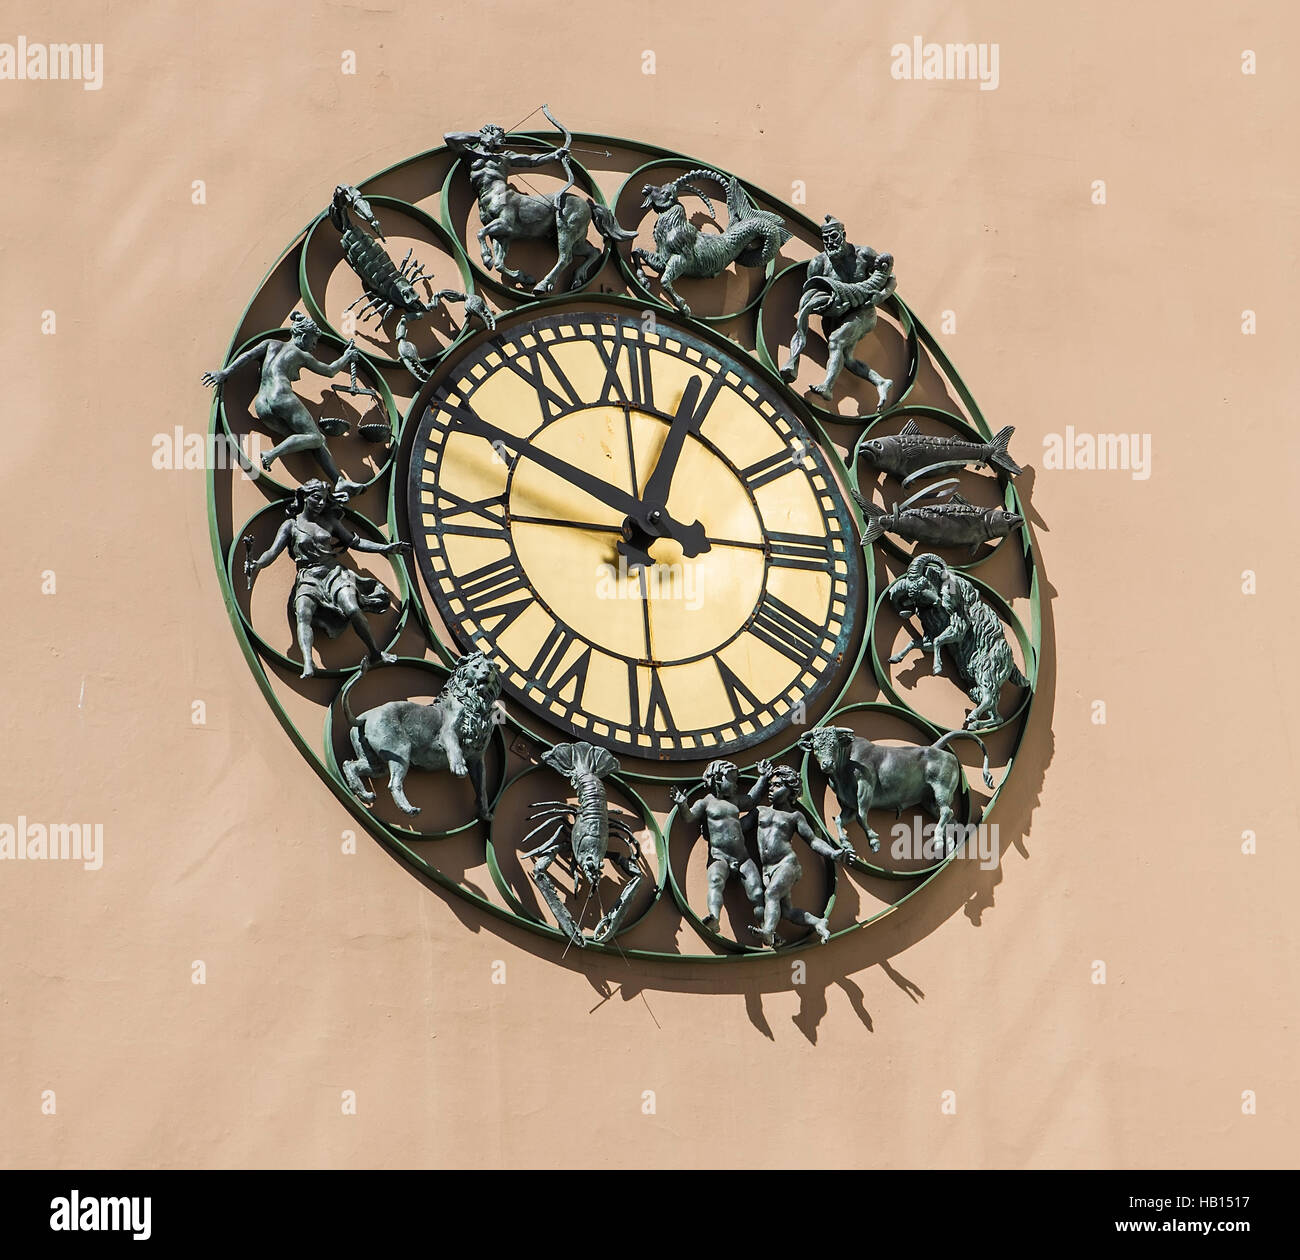 Horloge murale avec figurines les signes du zodiaque. Oslo. La Norvège Banque D'Images